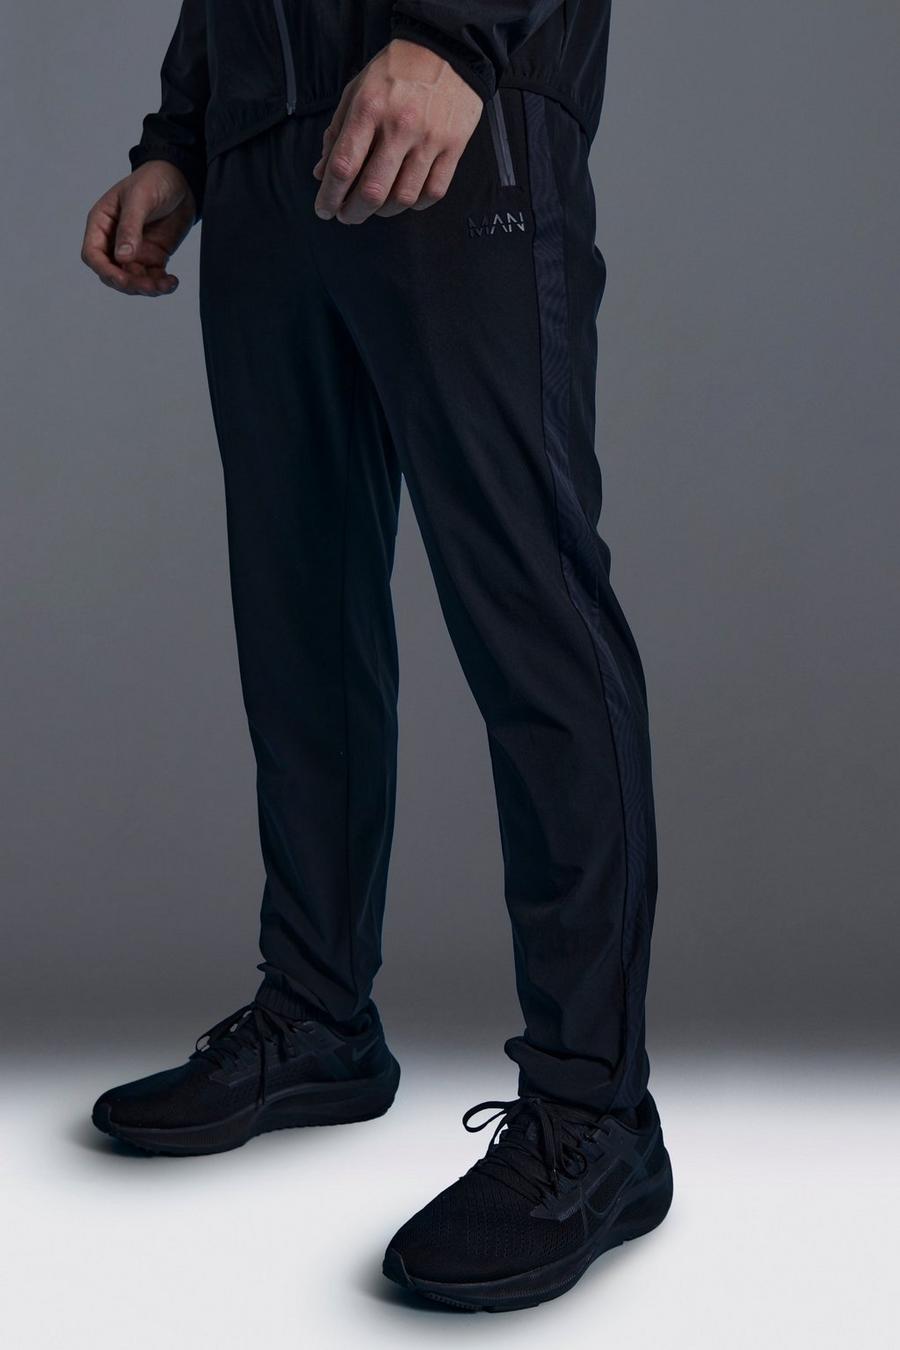 Pantalón deportivo MAN Active pitillo con estampado geométrico, Black